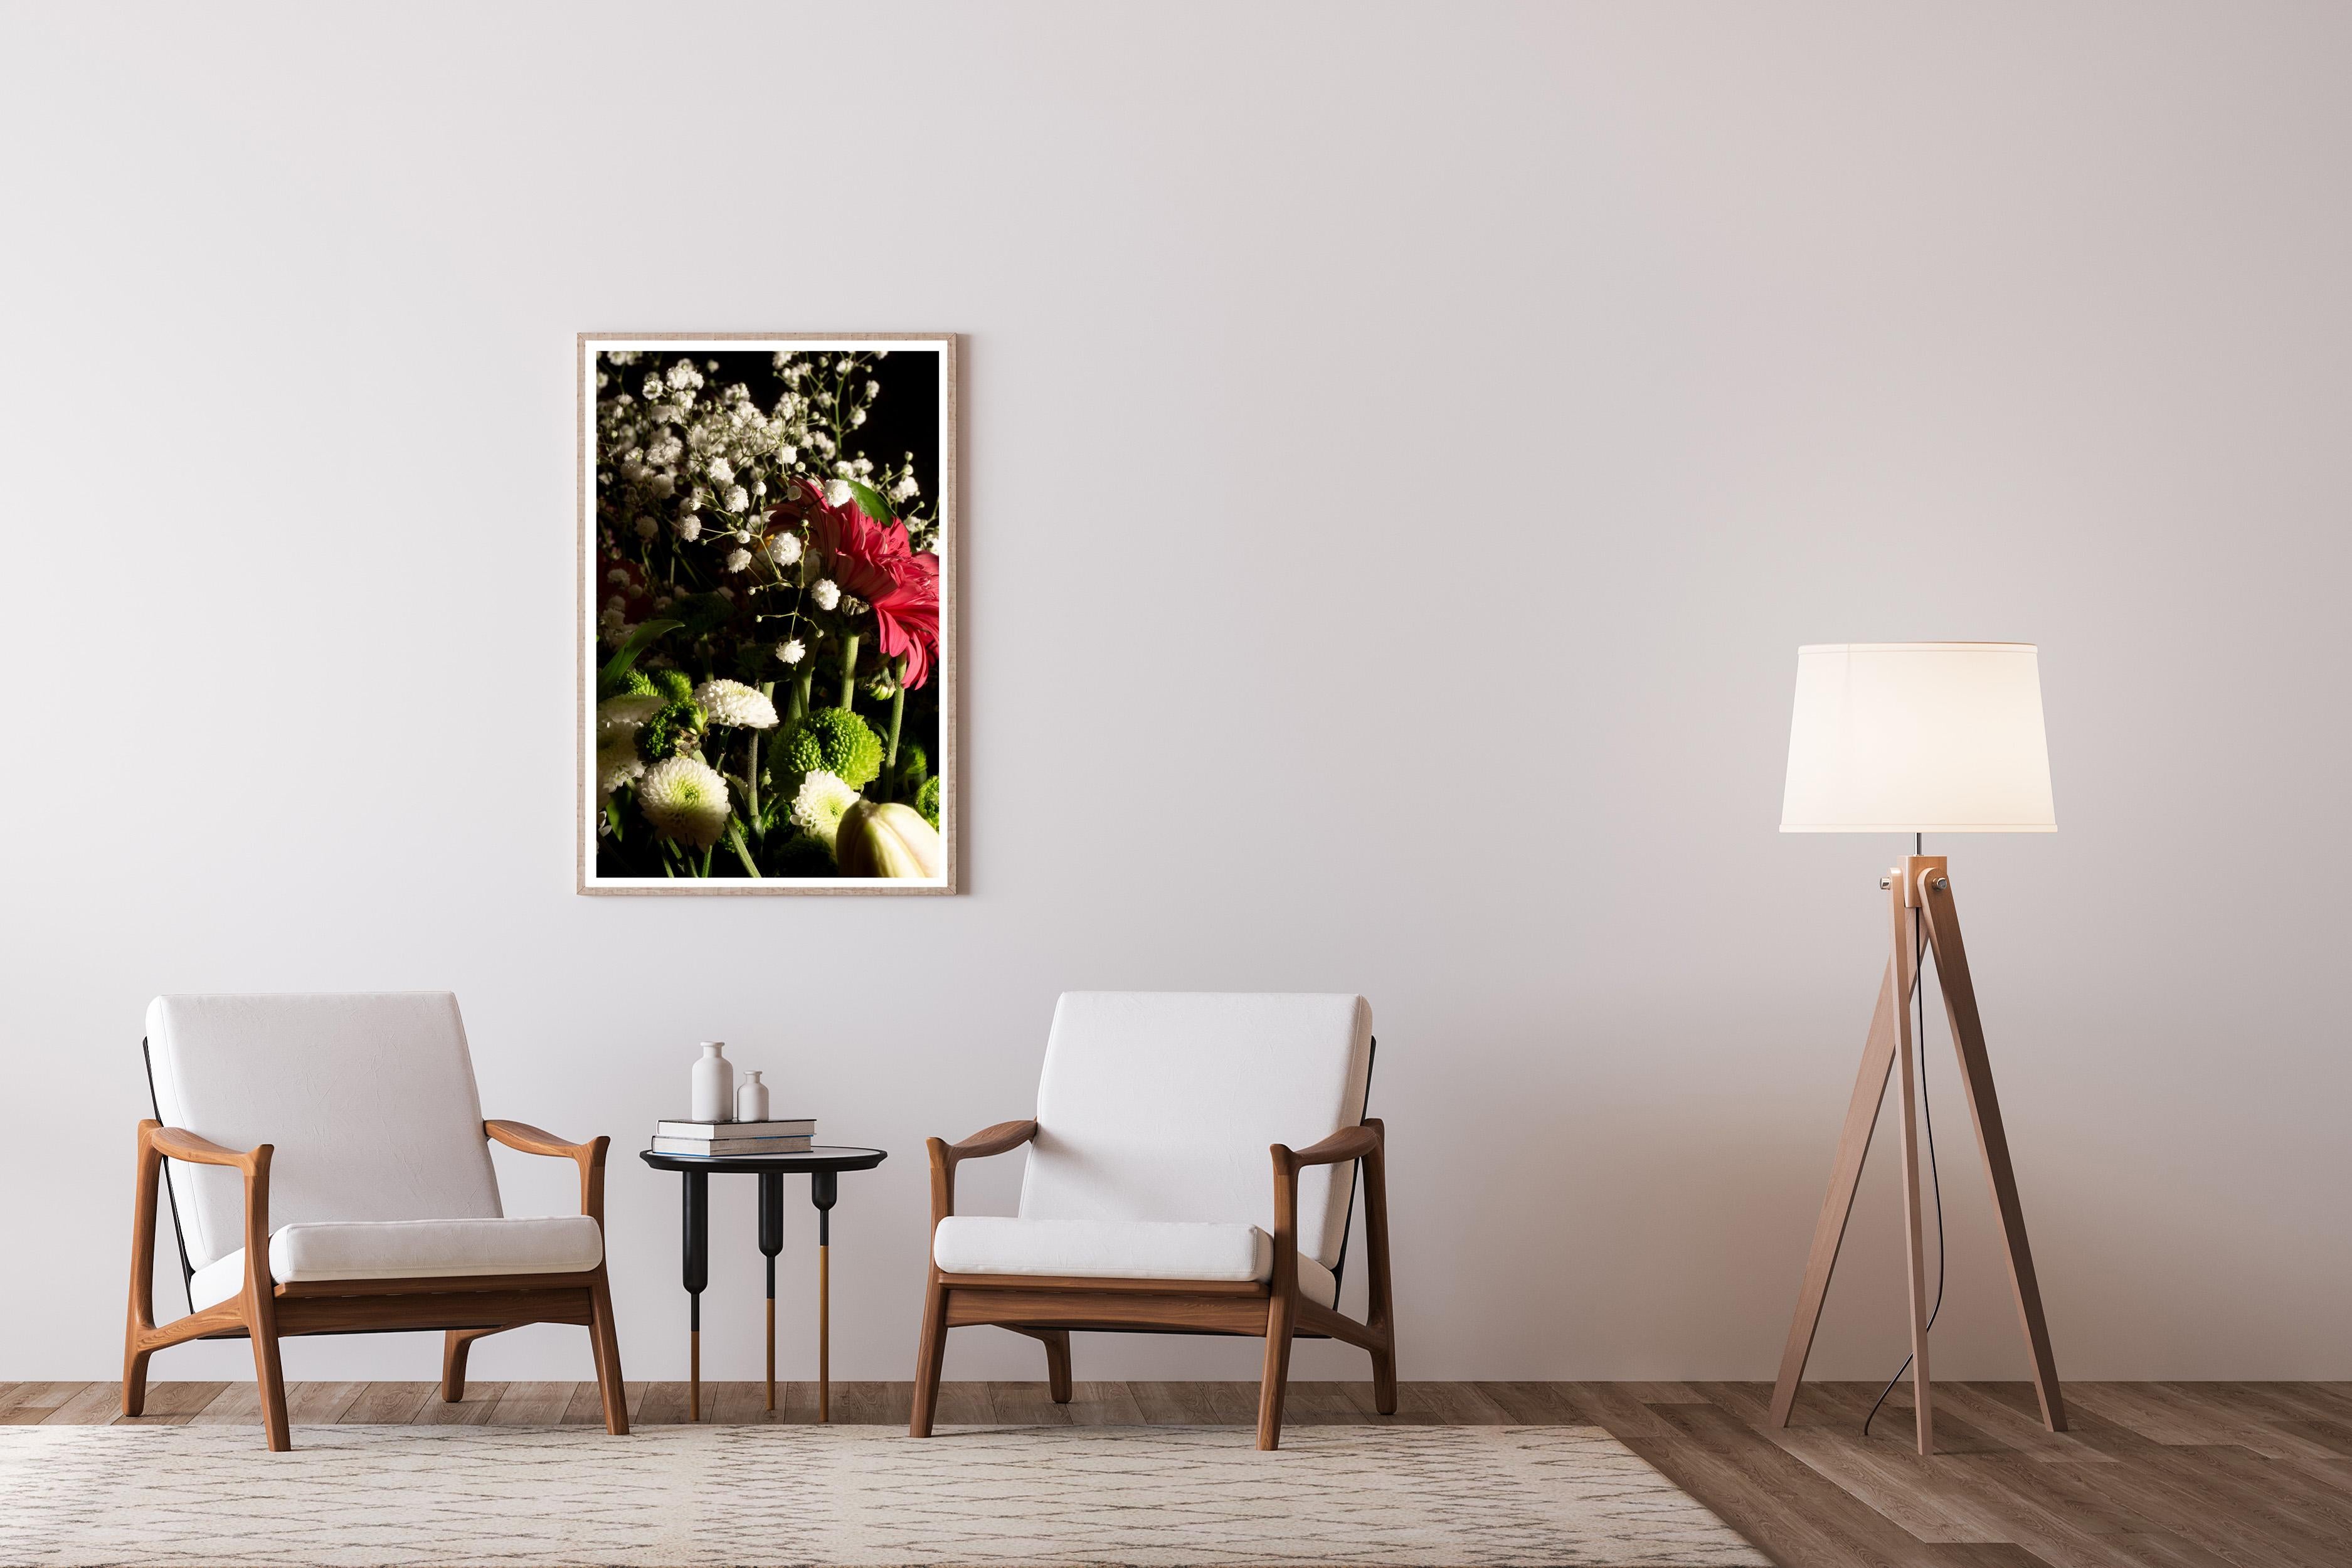 Mélange de bouquets de fleurs colorés, fleurs sauvages en gros plan, imprimé giclée, édition limitée - Naturalisme Photograph par Kind of Cyan